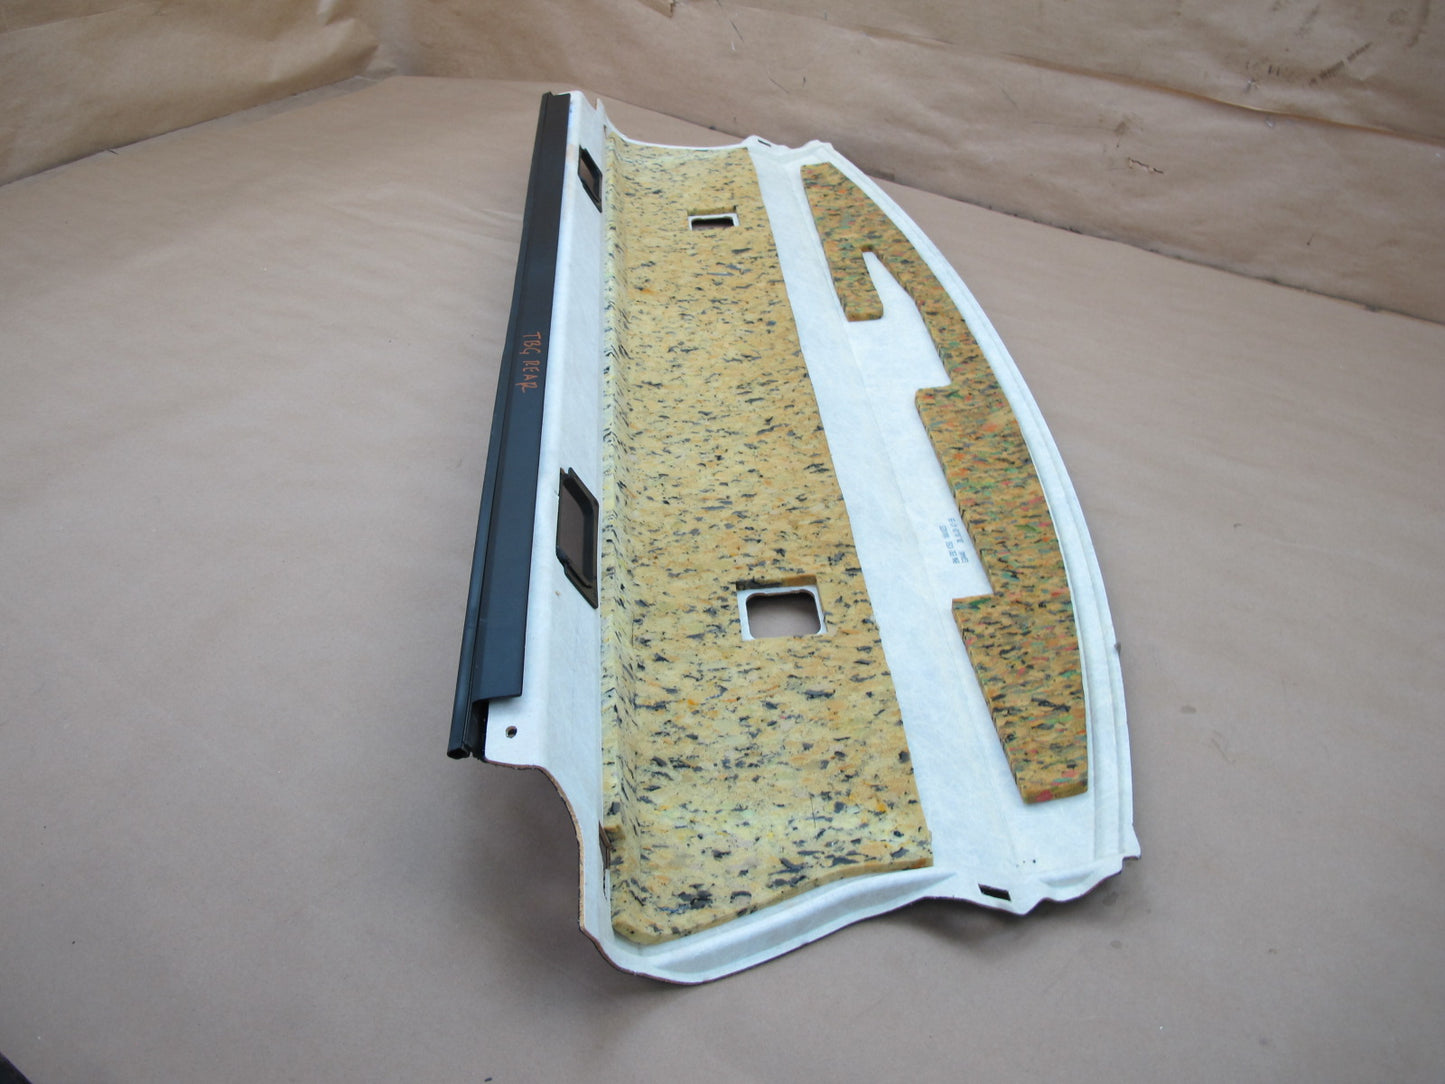 07-13 BMW E92 Coupe Rear Parcel Shelf Deck Trim Panel OEM